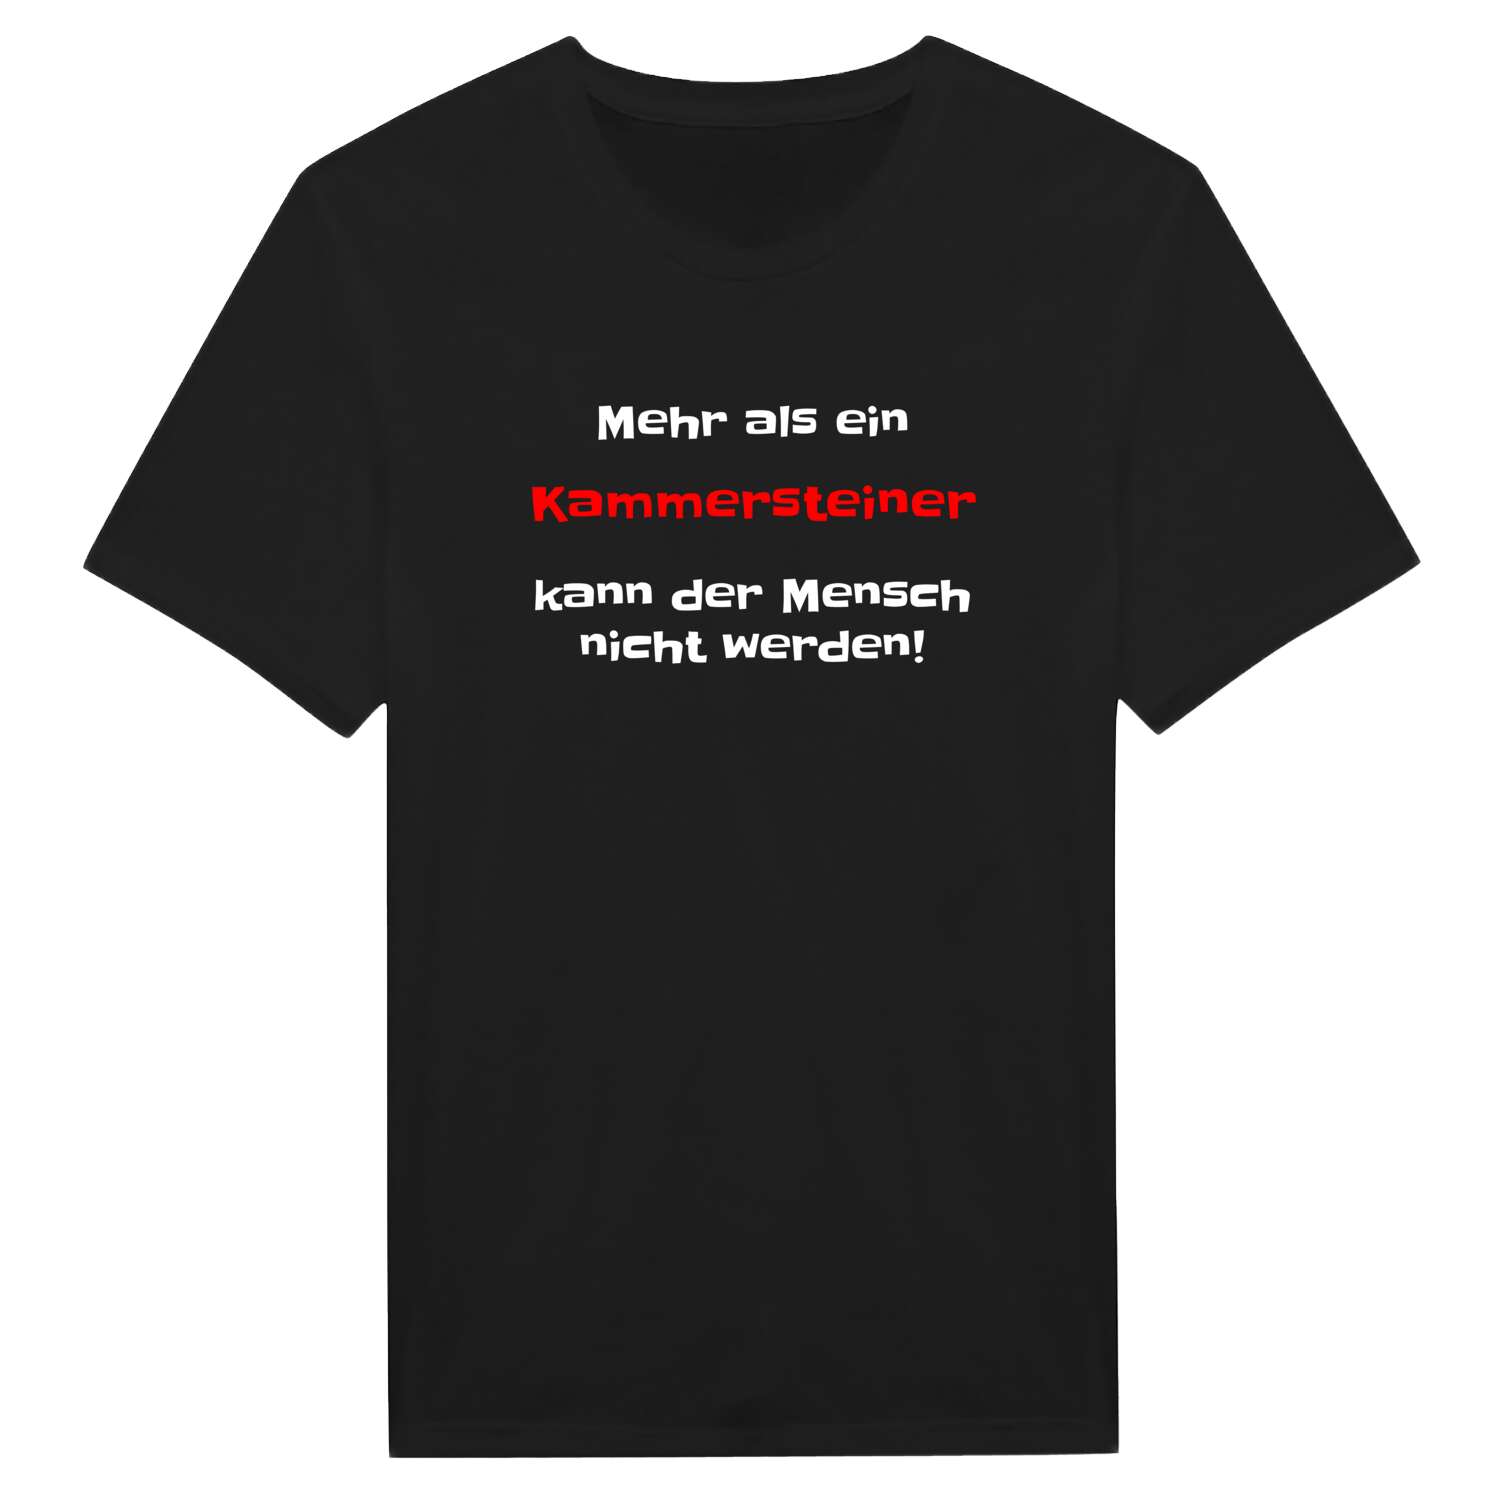 Kammerstein T-Shirt »Mehr als ein«